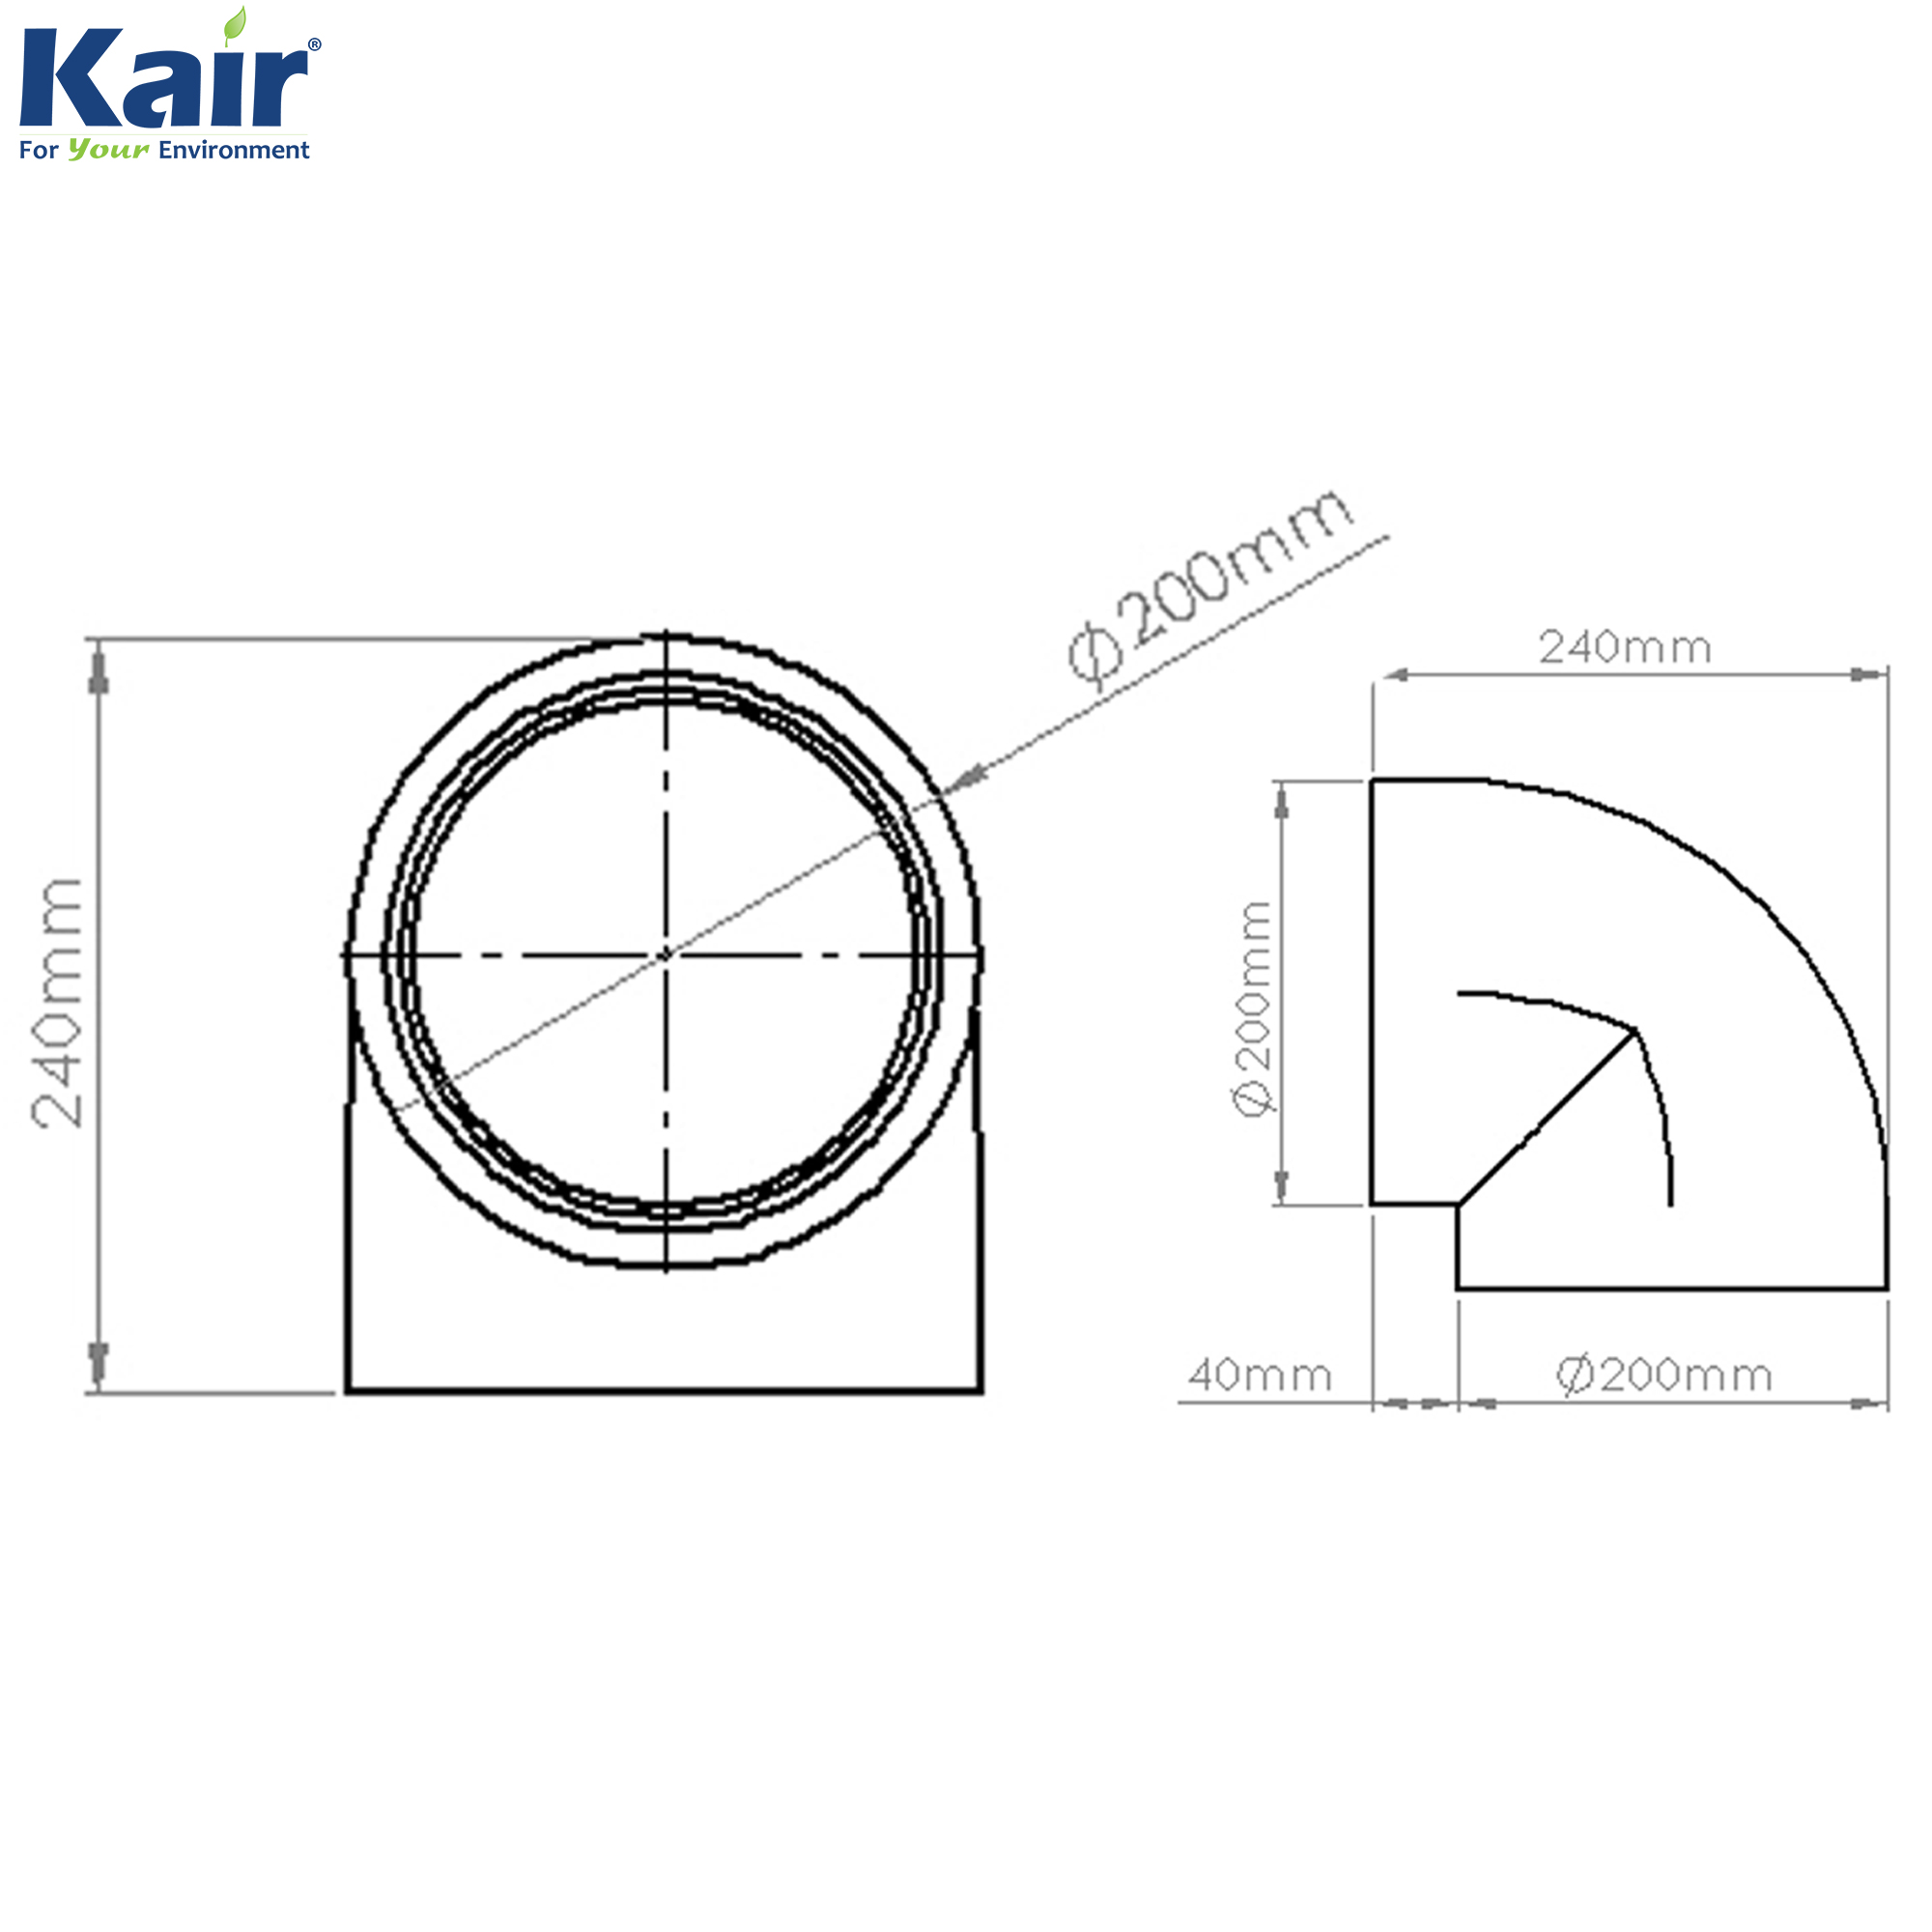 Kair Self-Seal Thermal Ducting - 160mm - 90 Degree Bends - Box of 6